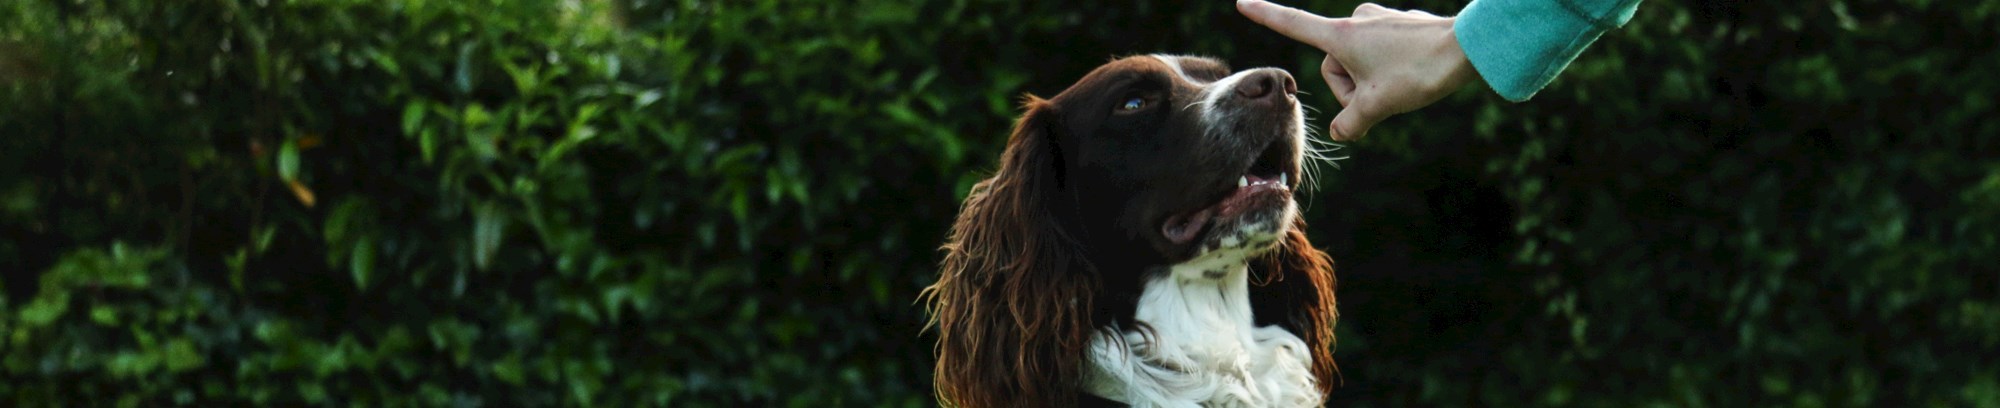 hundetræning træn din hund friluftsliv hundemenneske